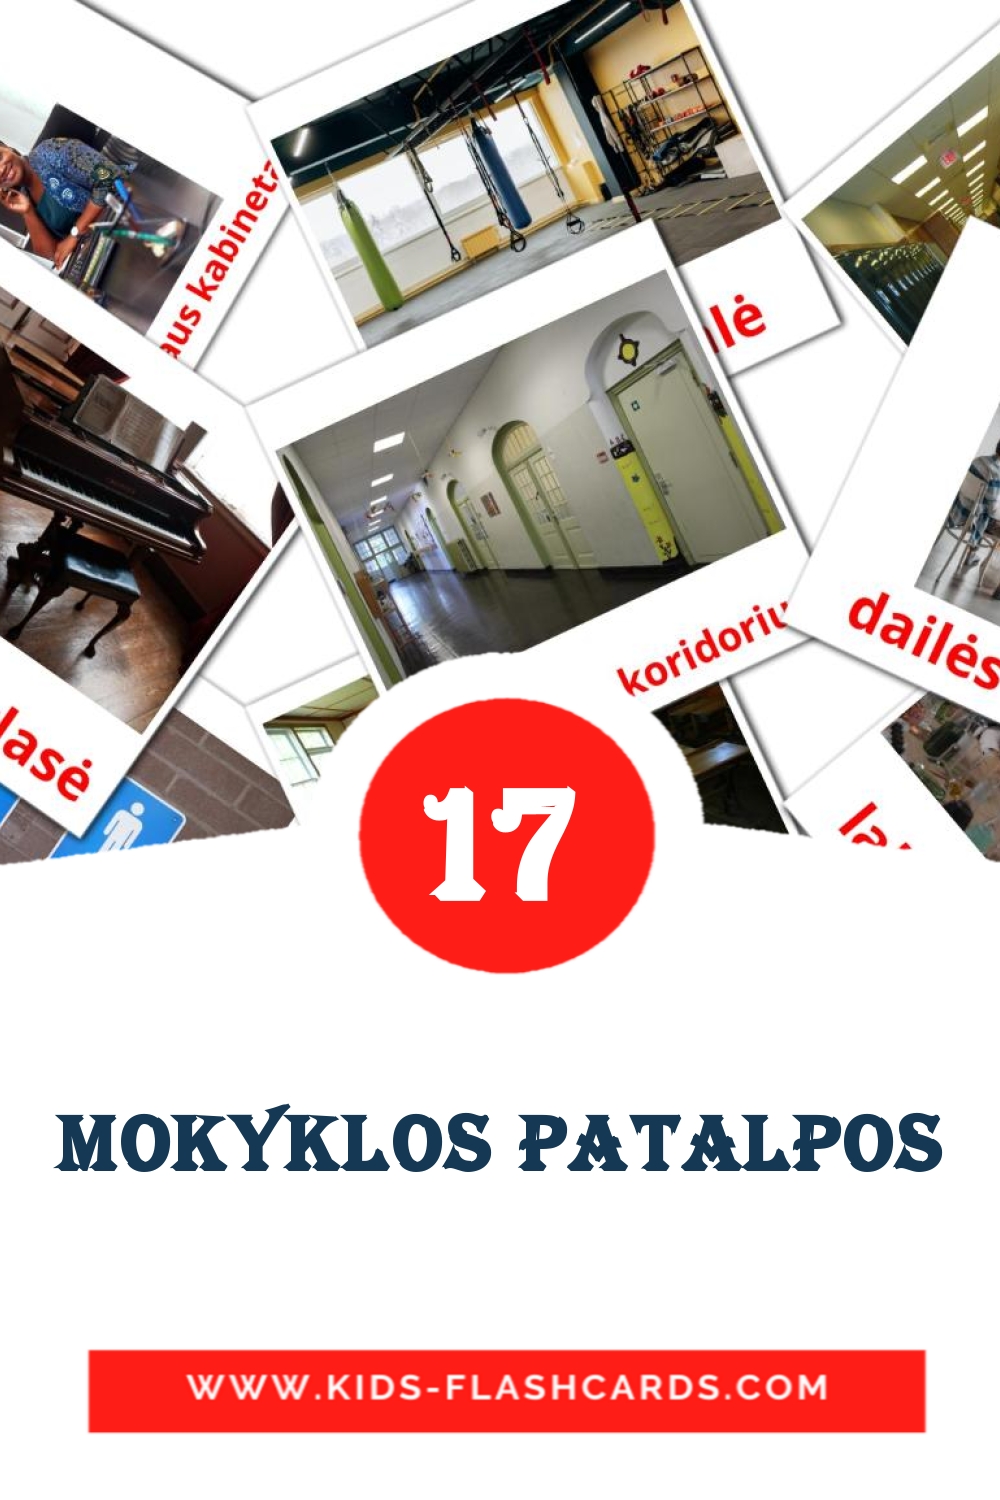 17 carte illustrate di mokyklos patalpos per la scuola materna in lituano